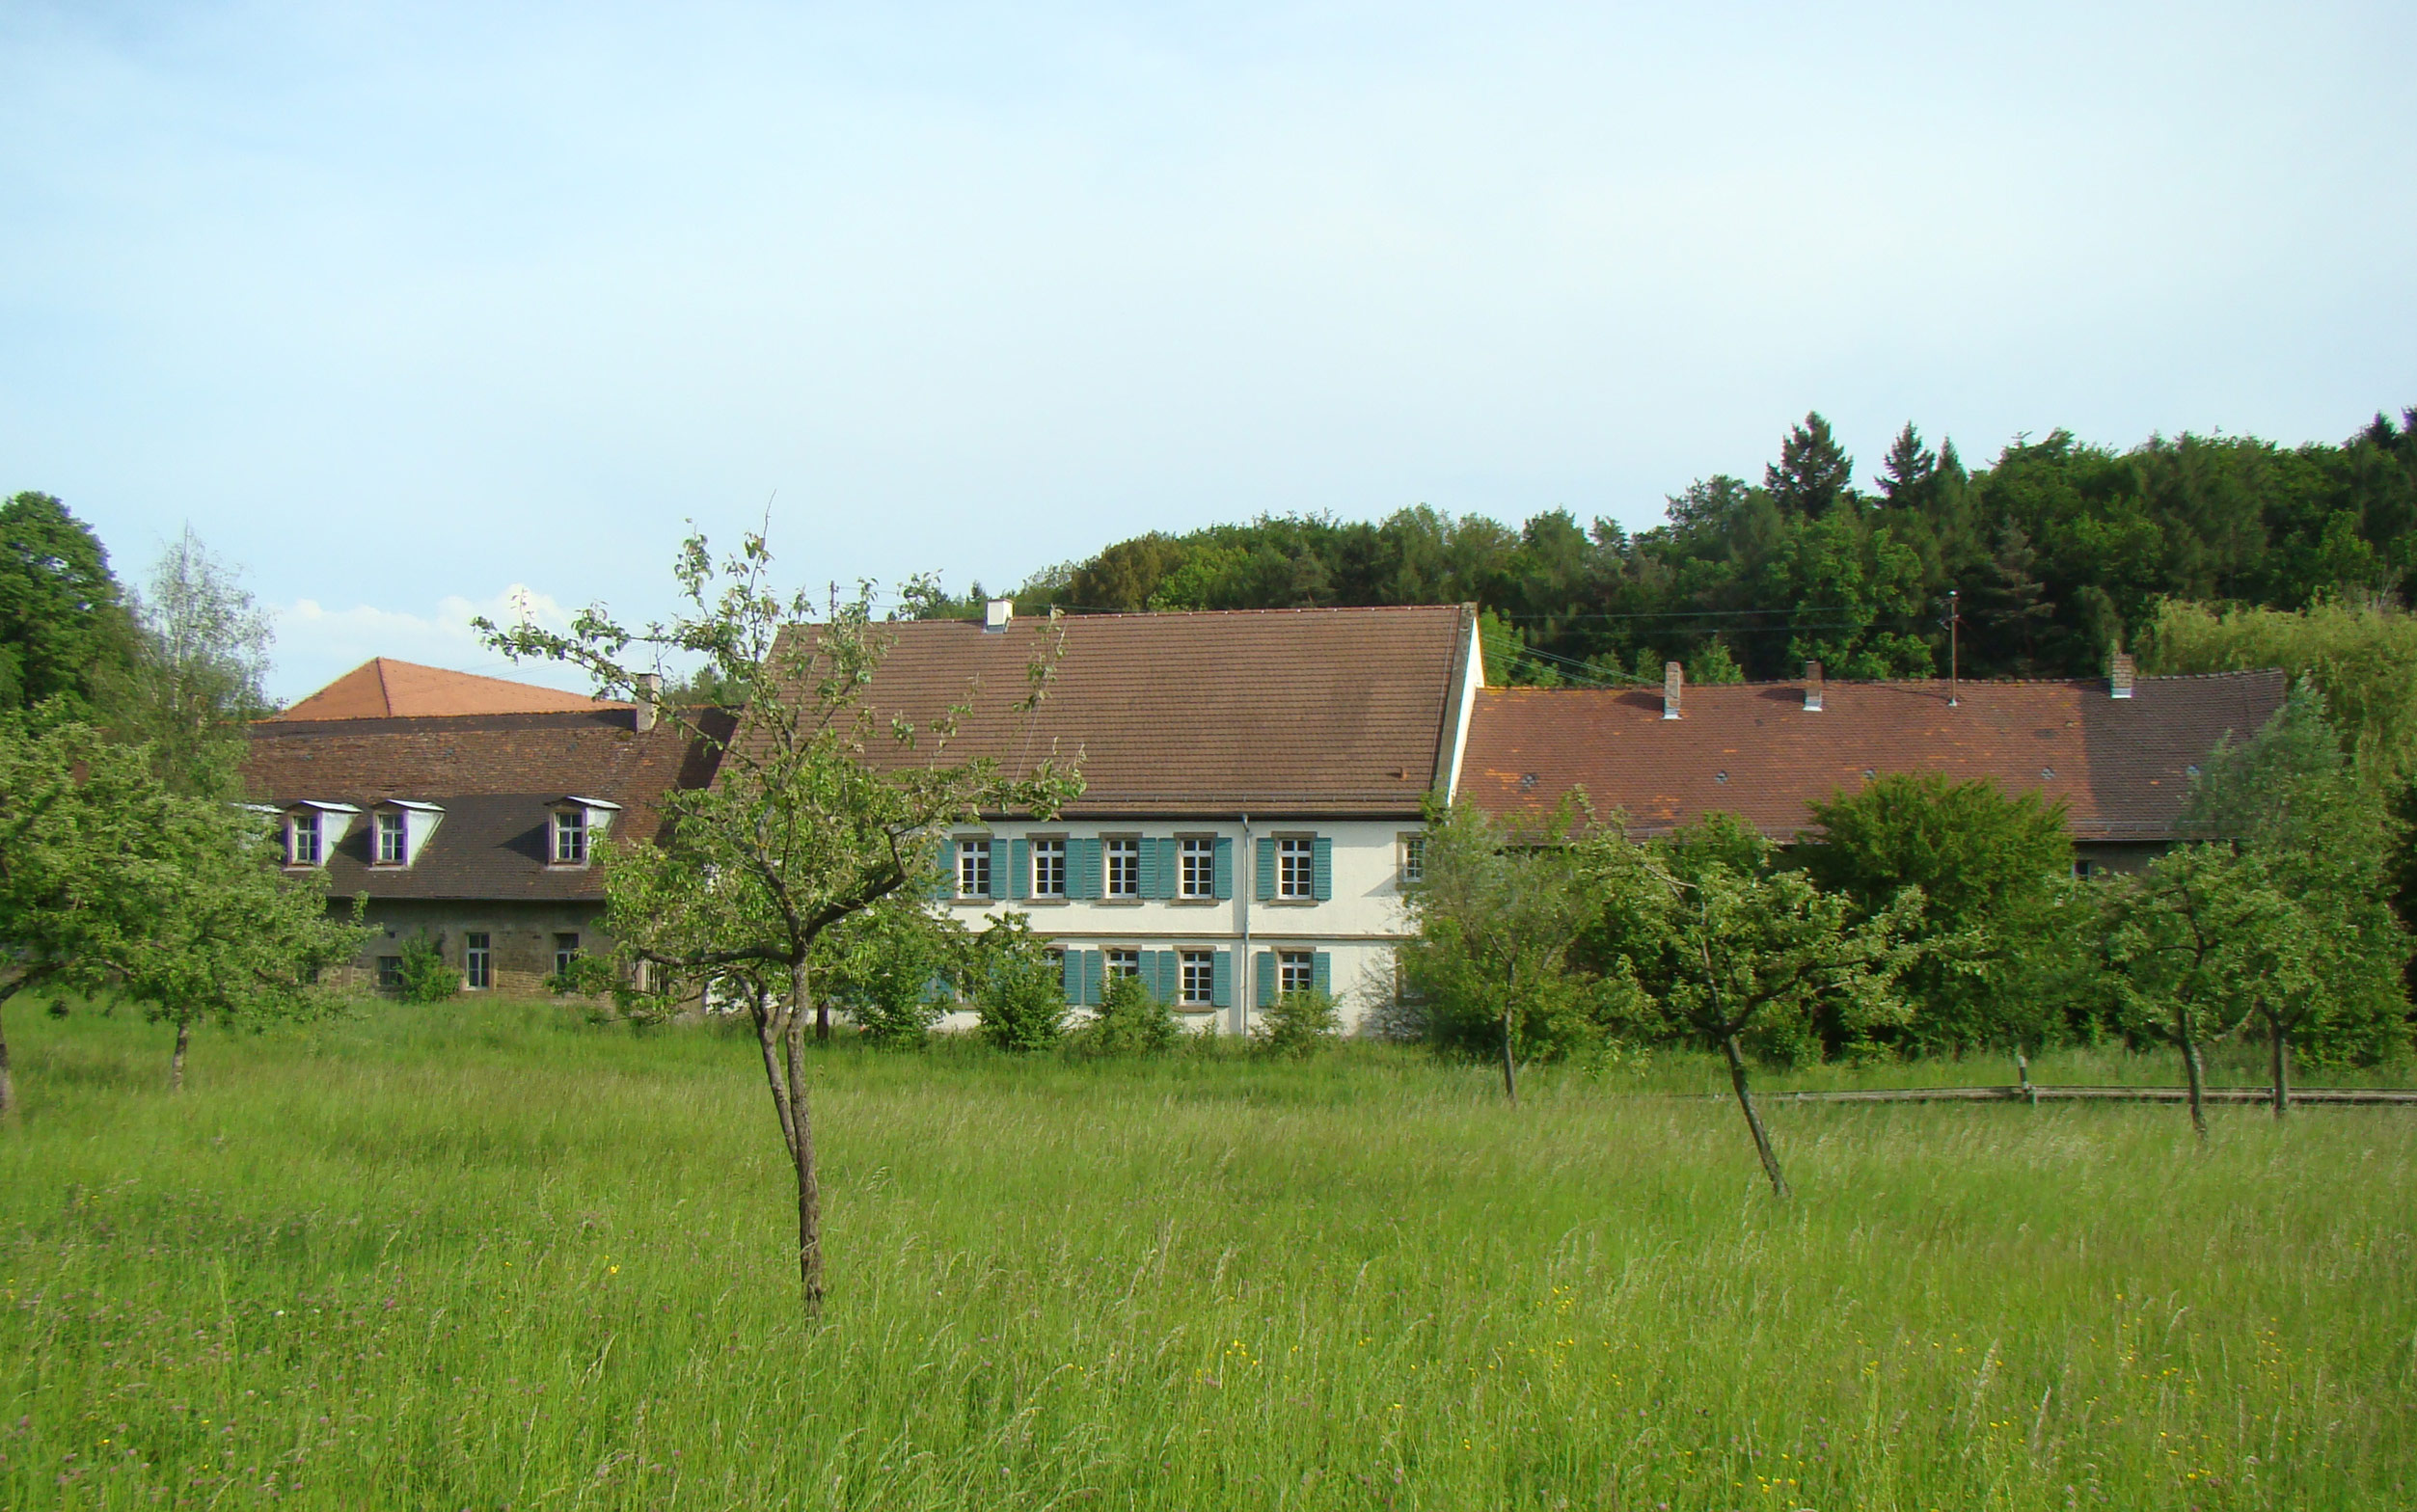 Stifterhof bei Östringen-Odenheim, bauliche Überreste des Klosters Odenheim